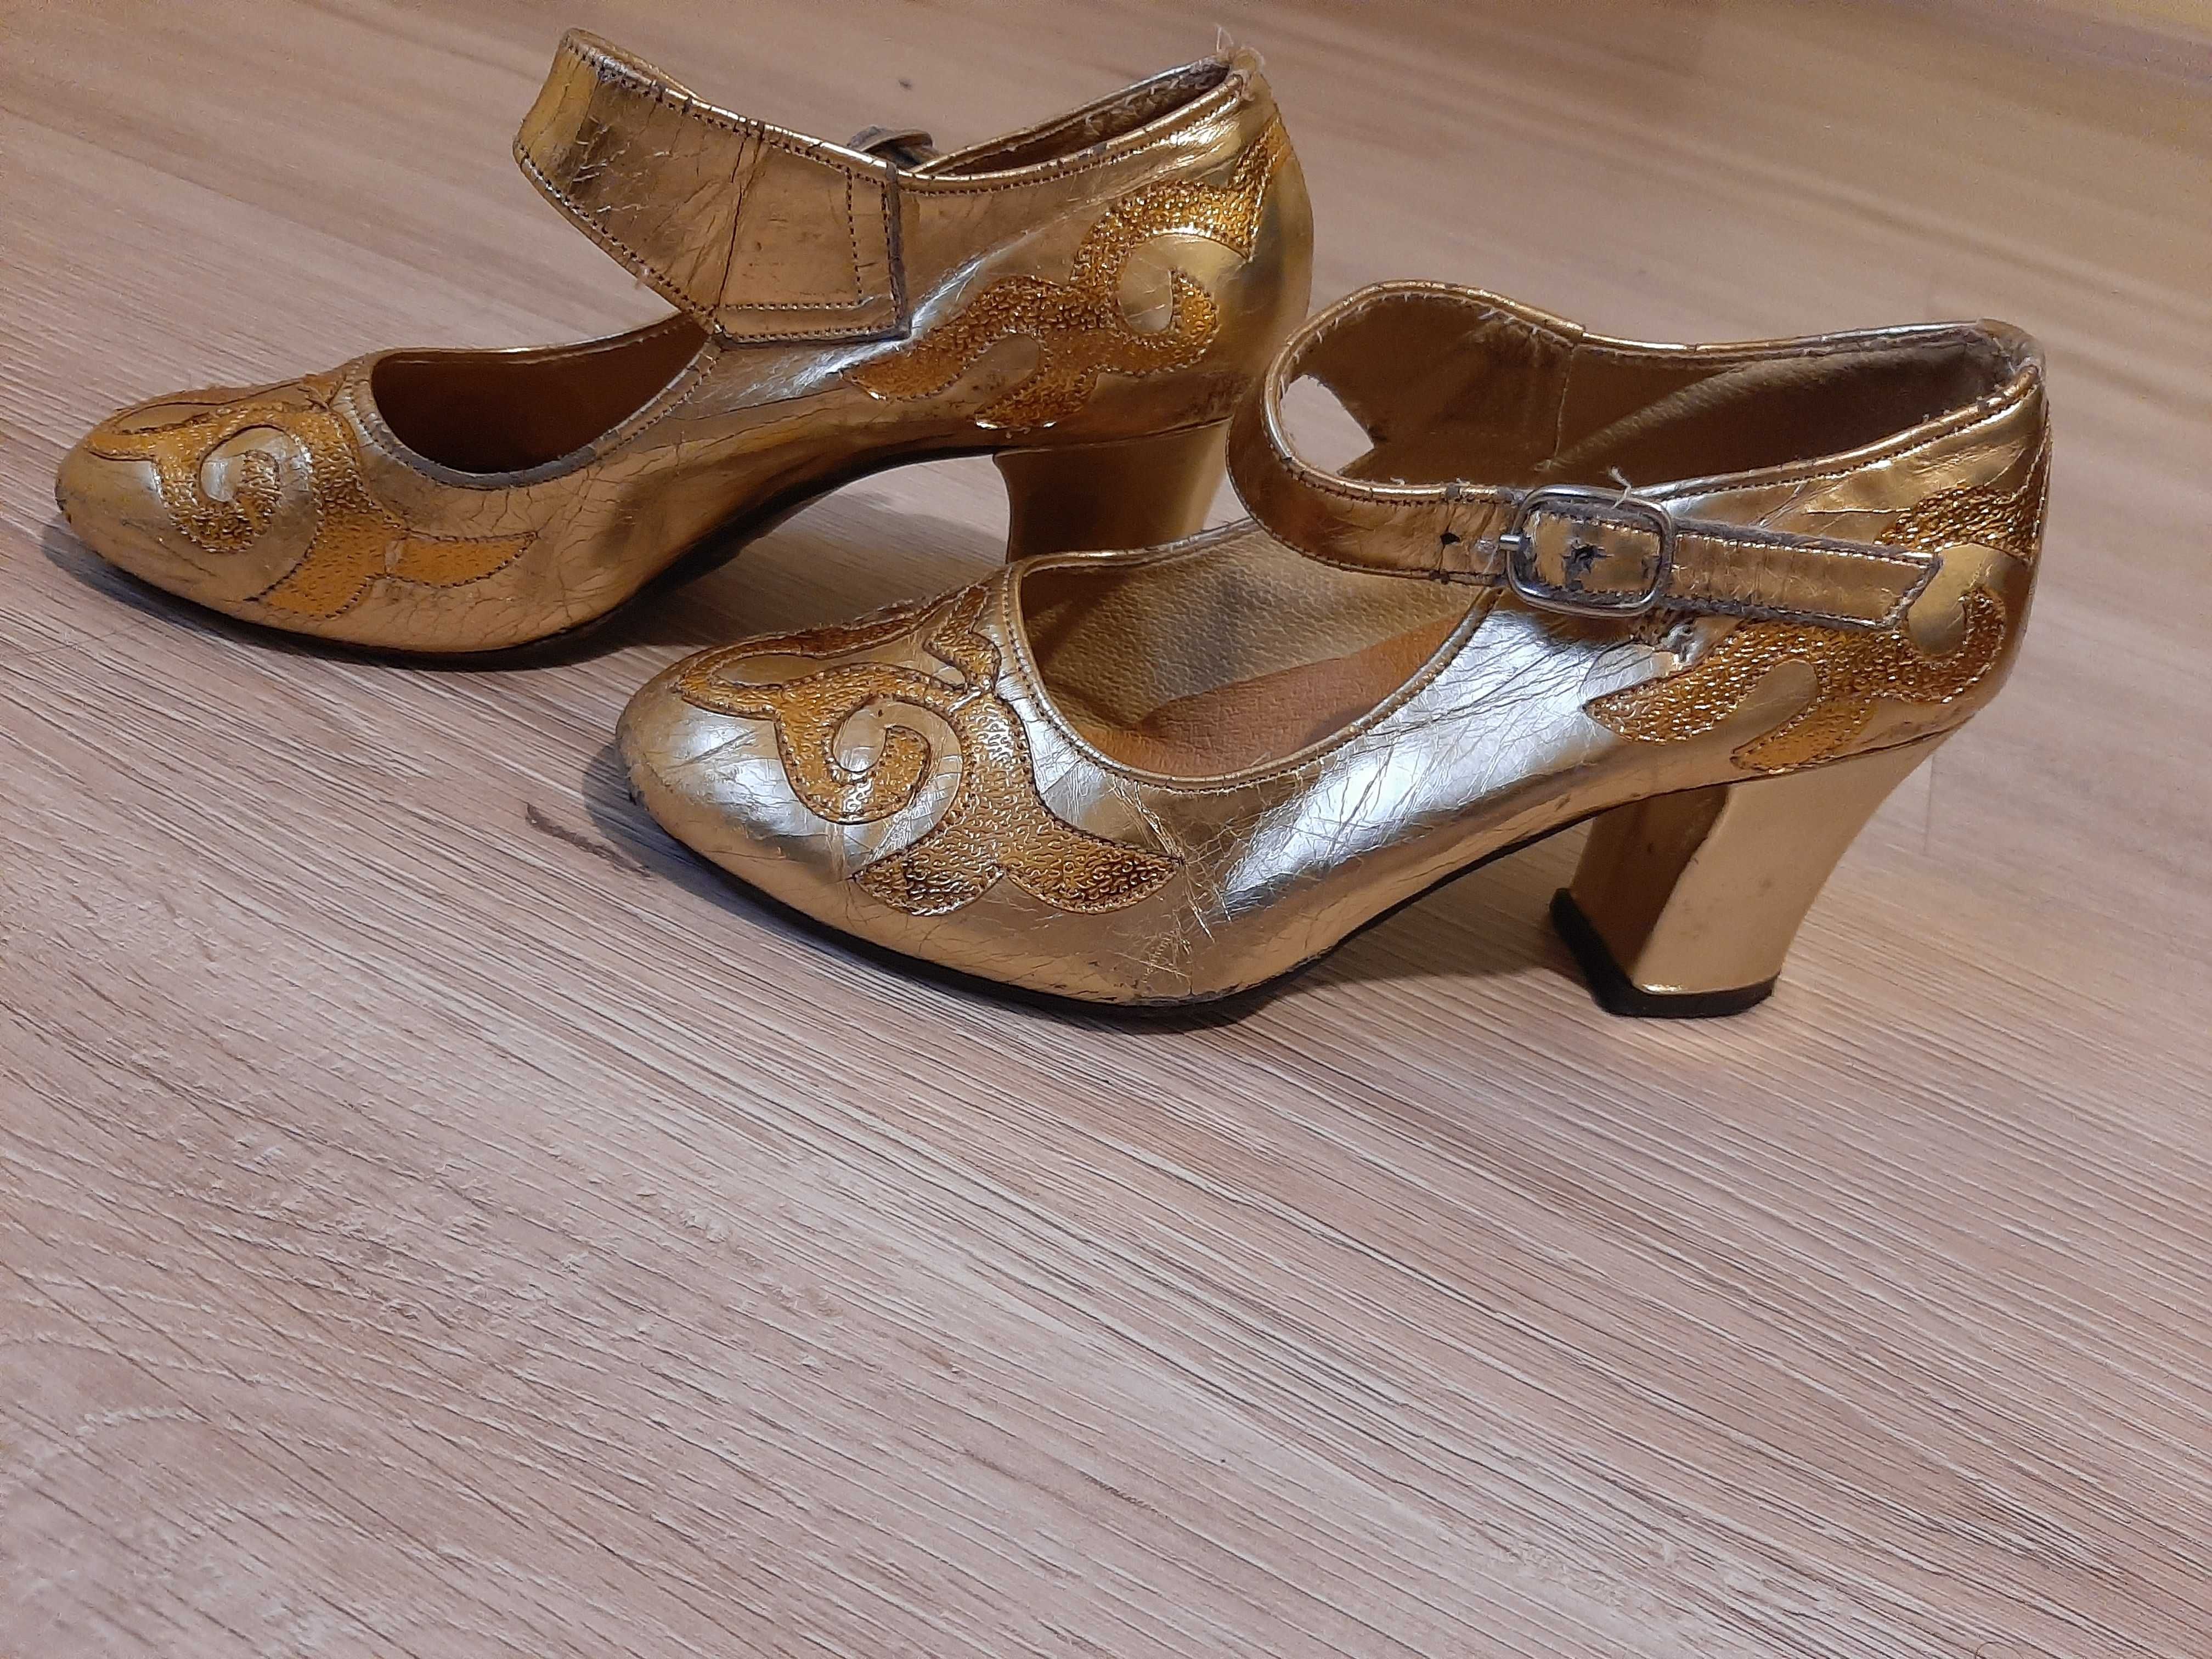 Туфли золотистого цвета, с казахским национальным узором. 34 размер.